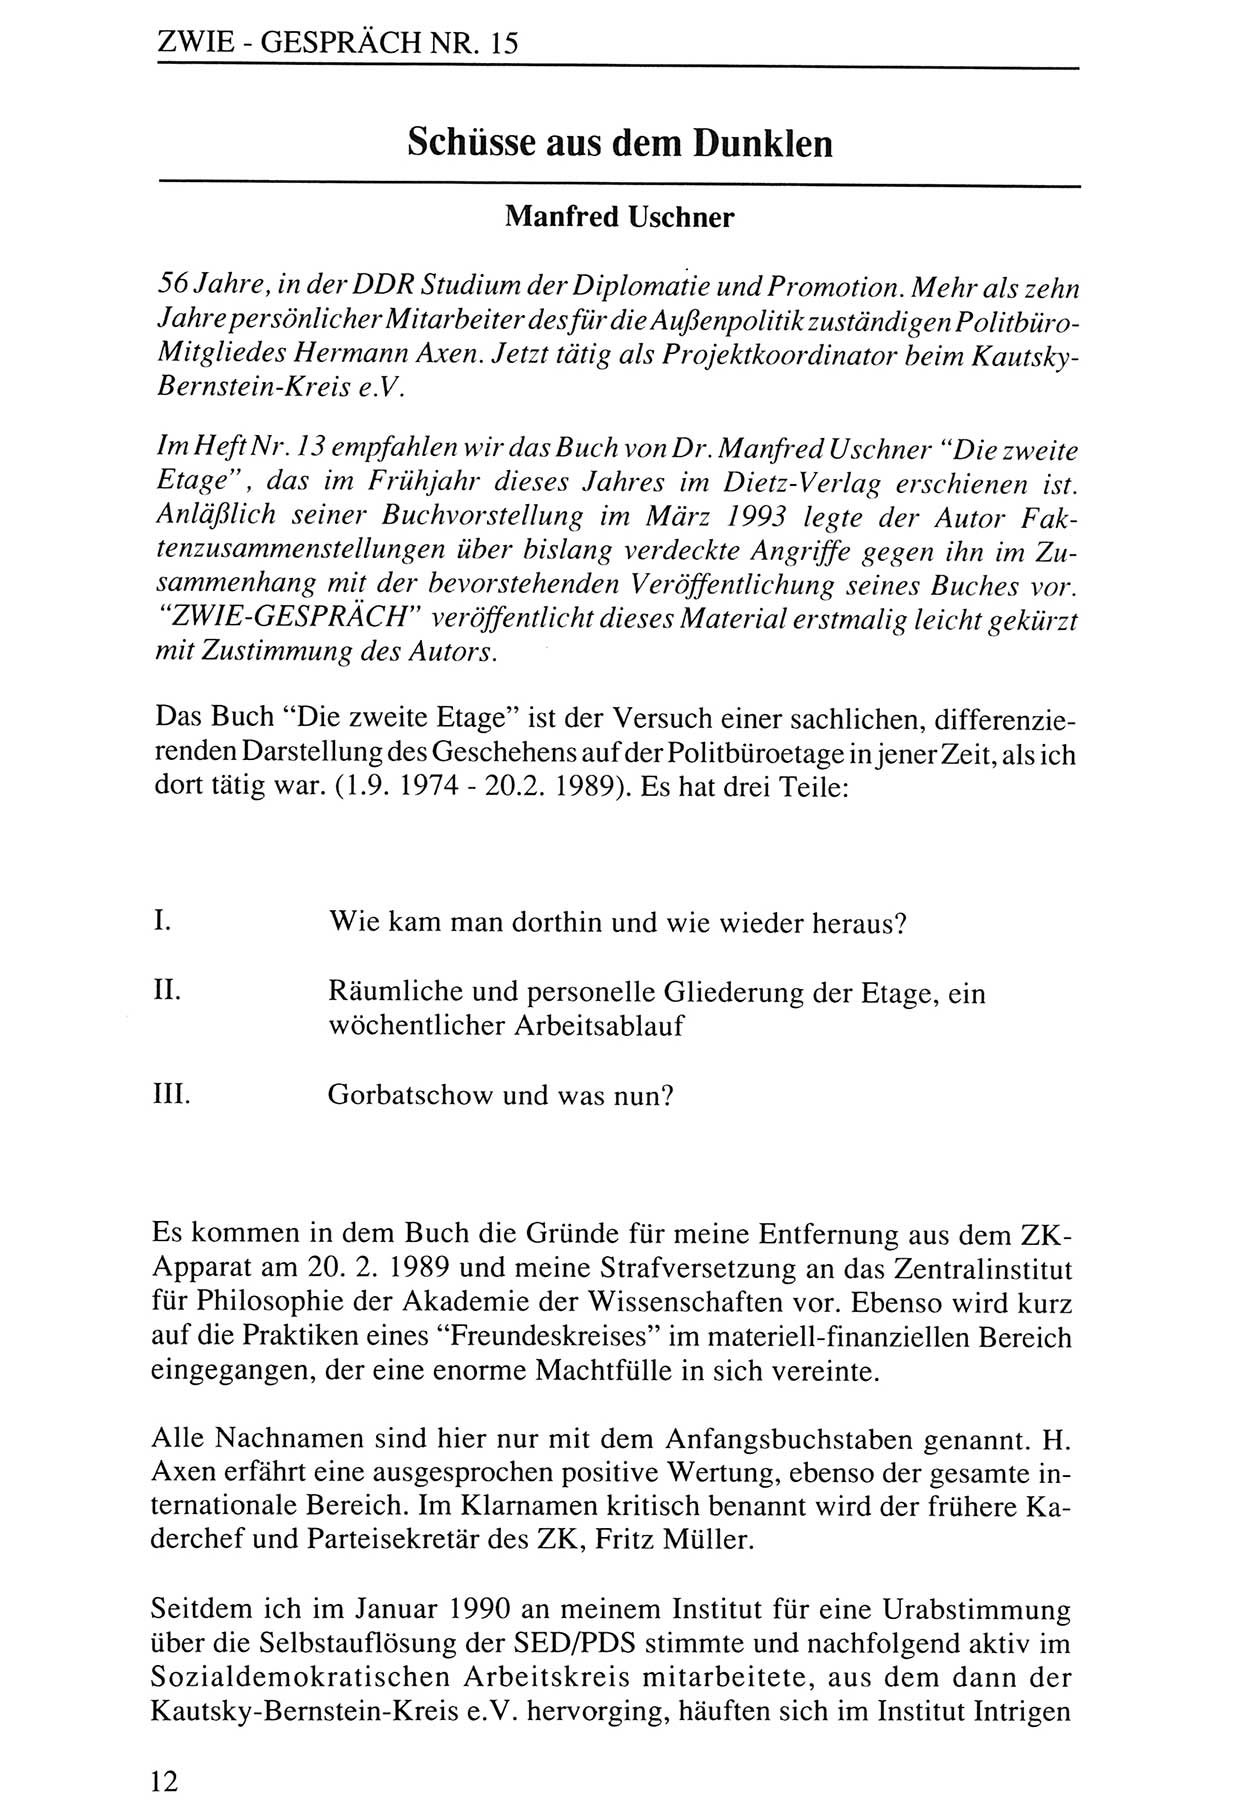 Zwie-Gespräch, Beiträge zur Aufarbeitung der Staatssicherheits-Vergangenheit [Deutsche Demokratische Republik (DDR)], Ausgabe Nr. 15, Berlin 1993, Seite 12 (Zwie-Gespr. Ausg. 15 1993, S. 12)